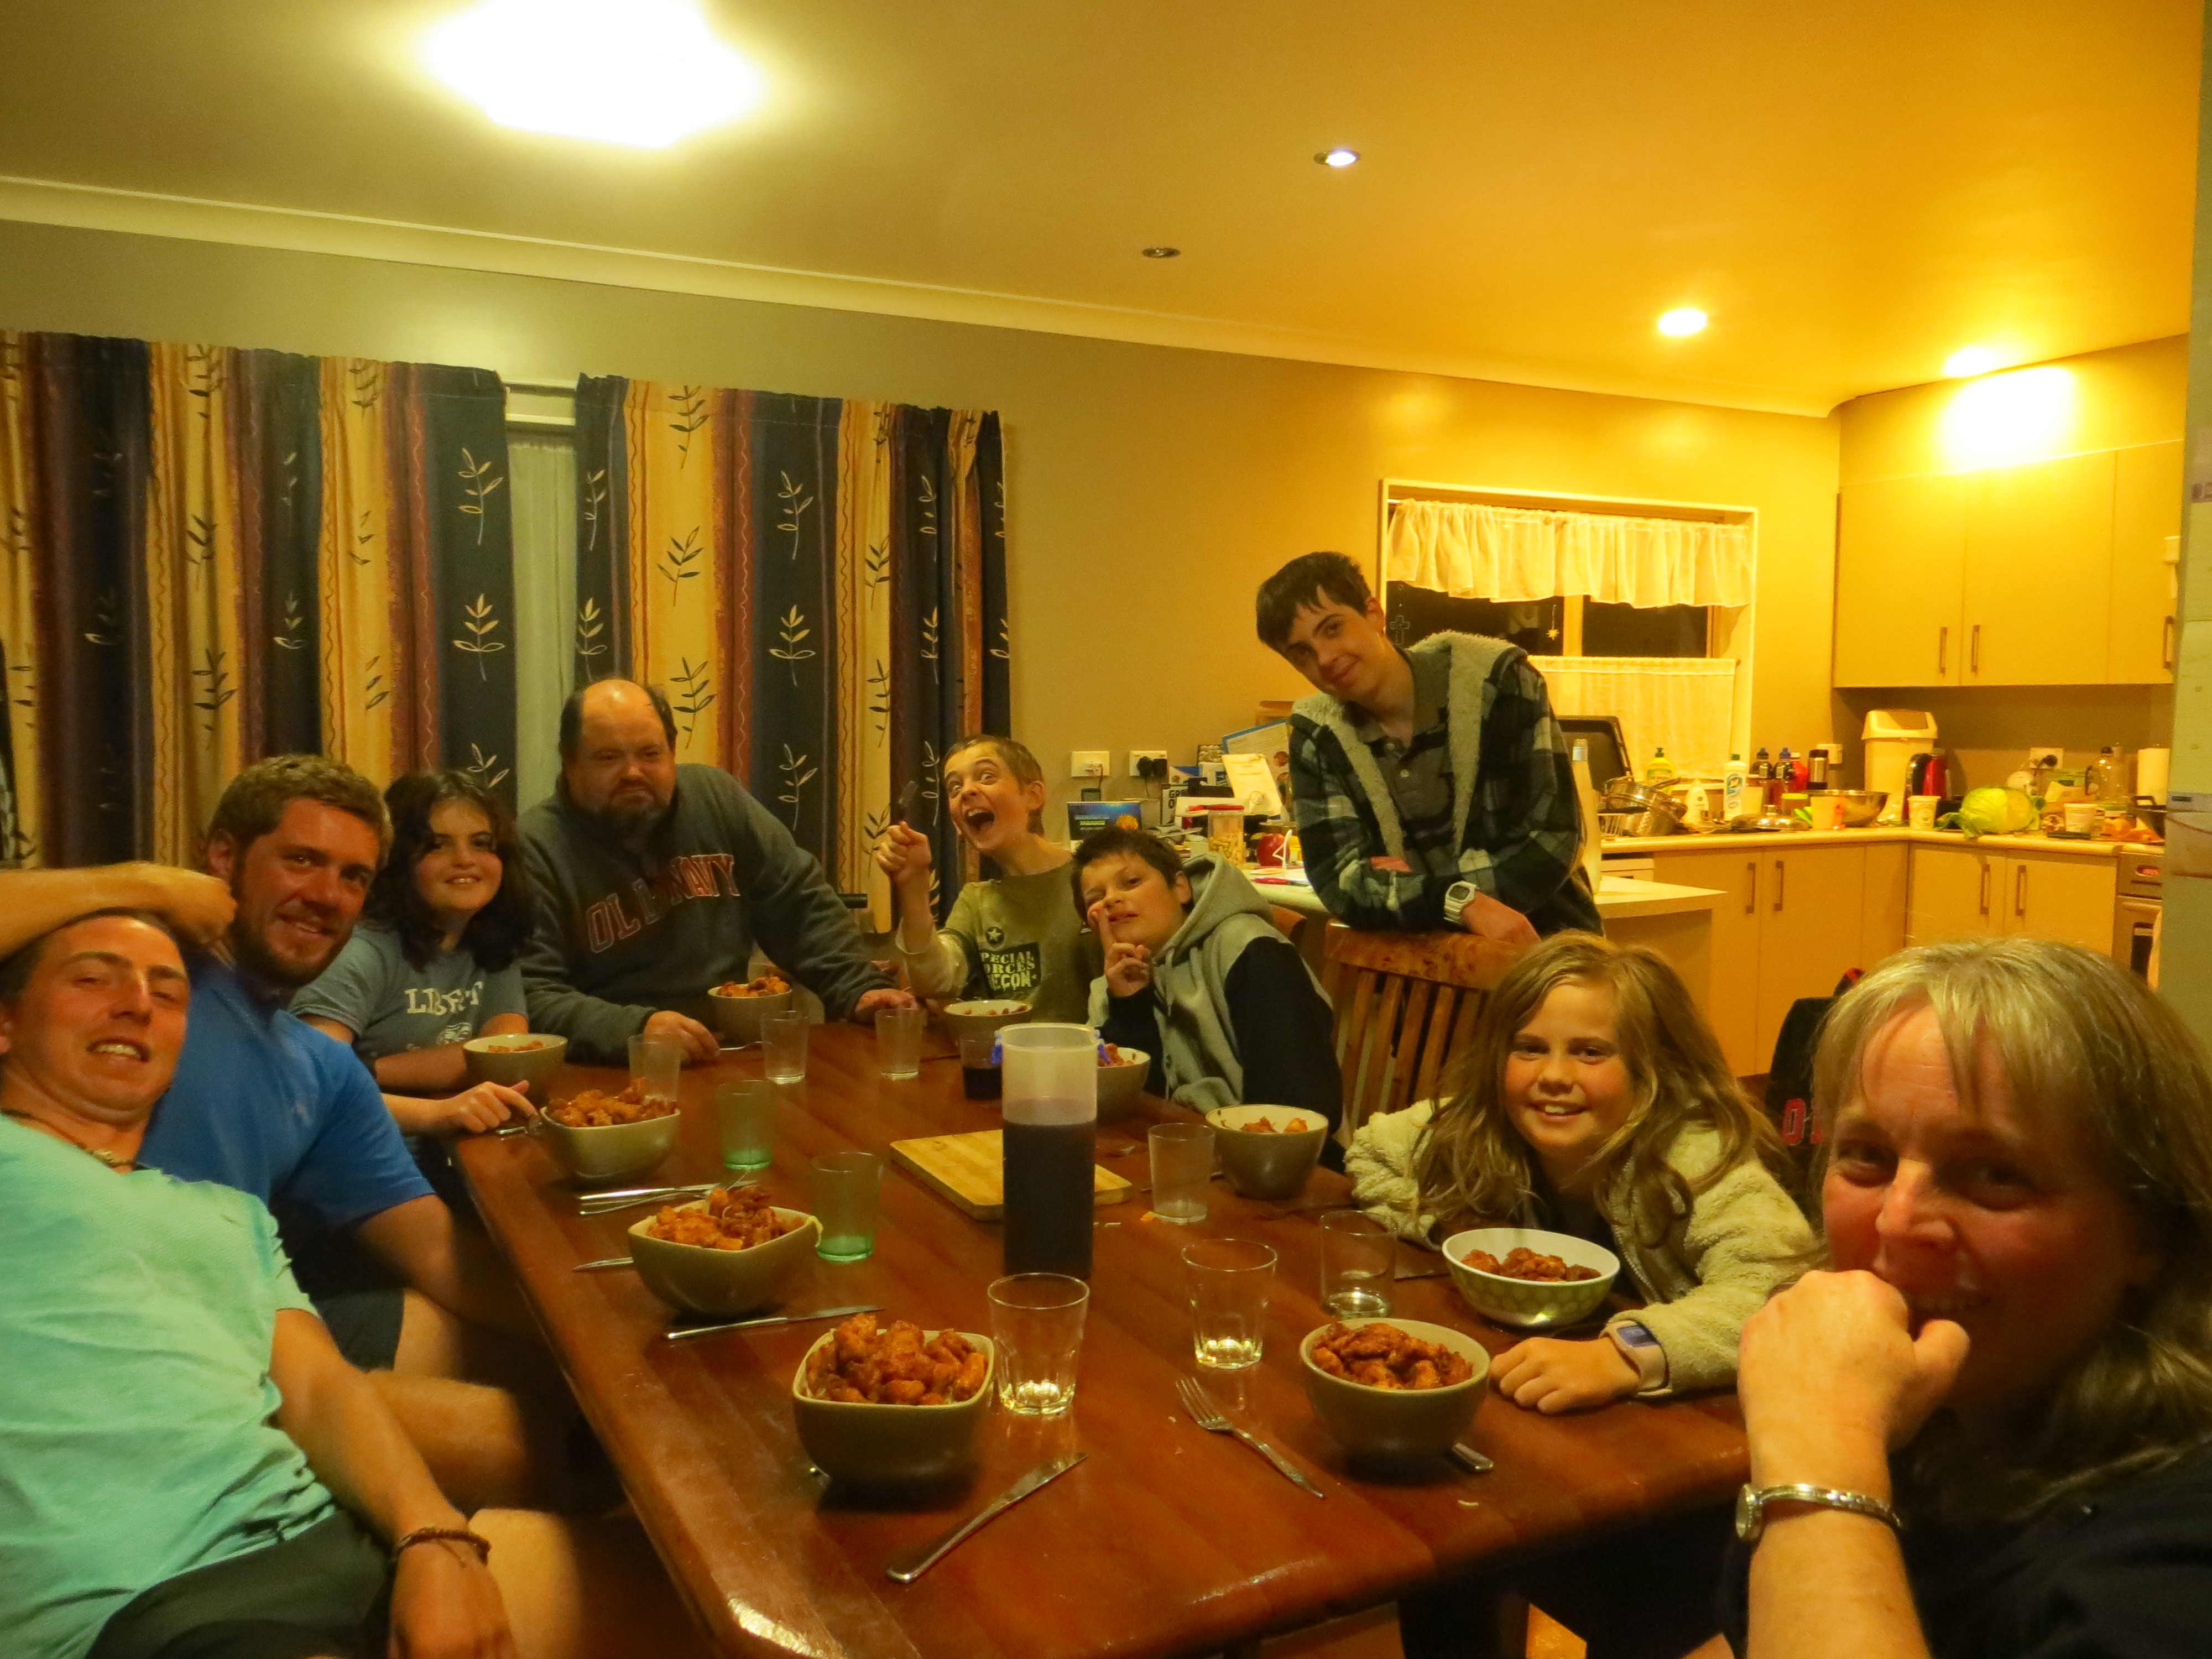 La famille Mete au grand complet nous accueille ! Inoubliables moments passes avec eux a Auckland